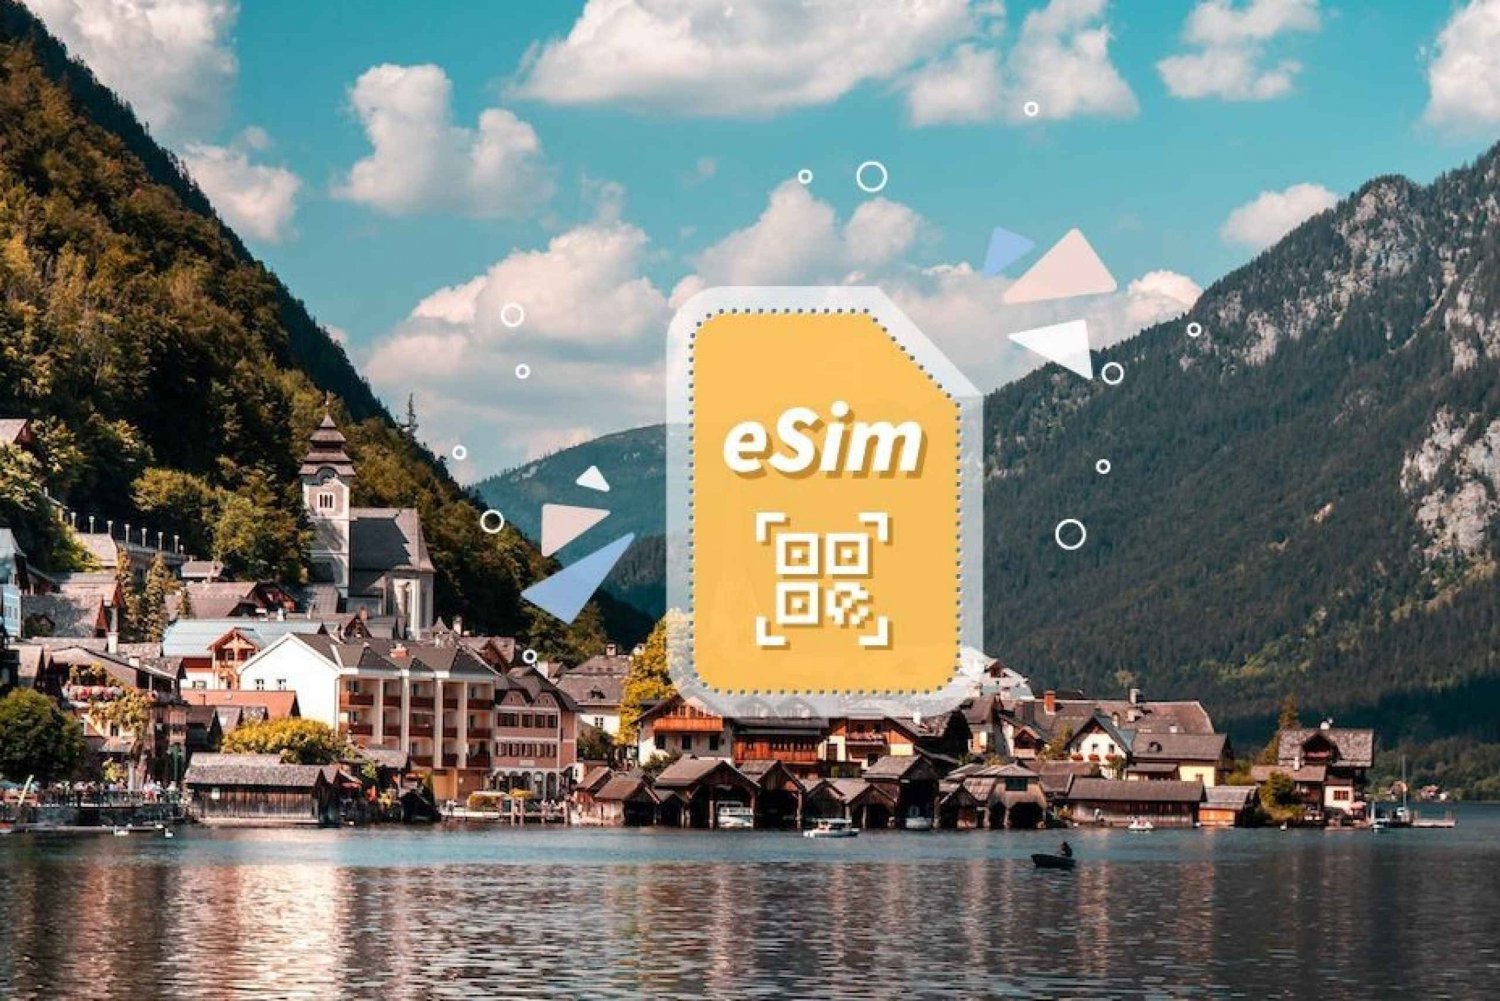 Itävalta/Eurooppa: 5G eSim -mobiilidatapaketti